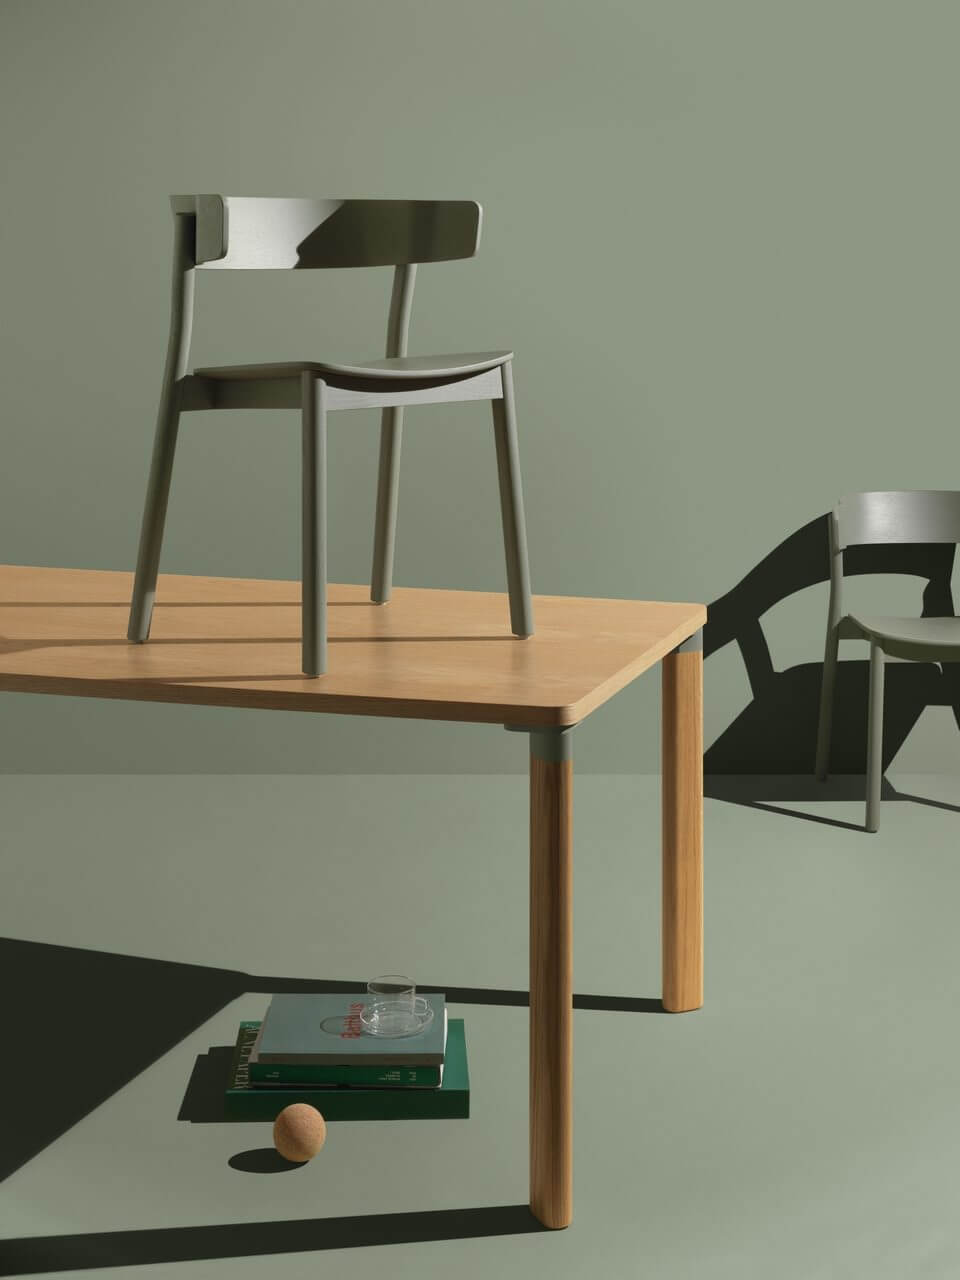 Une chaise en bois design qui peut être suspendue à la table grâce à ses accoudoirs